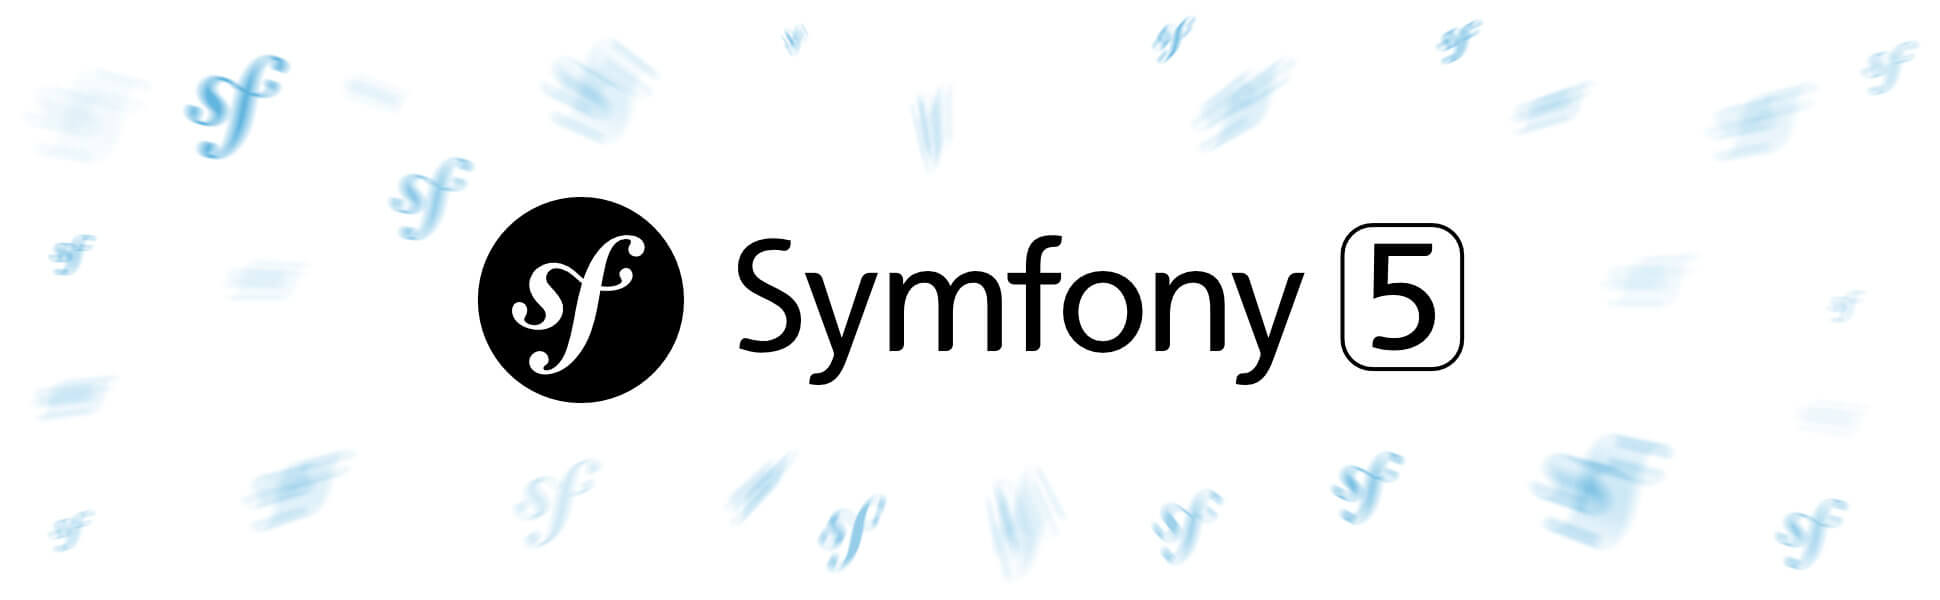 symfony-5.jpg